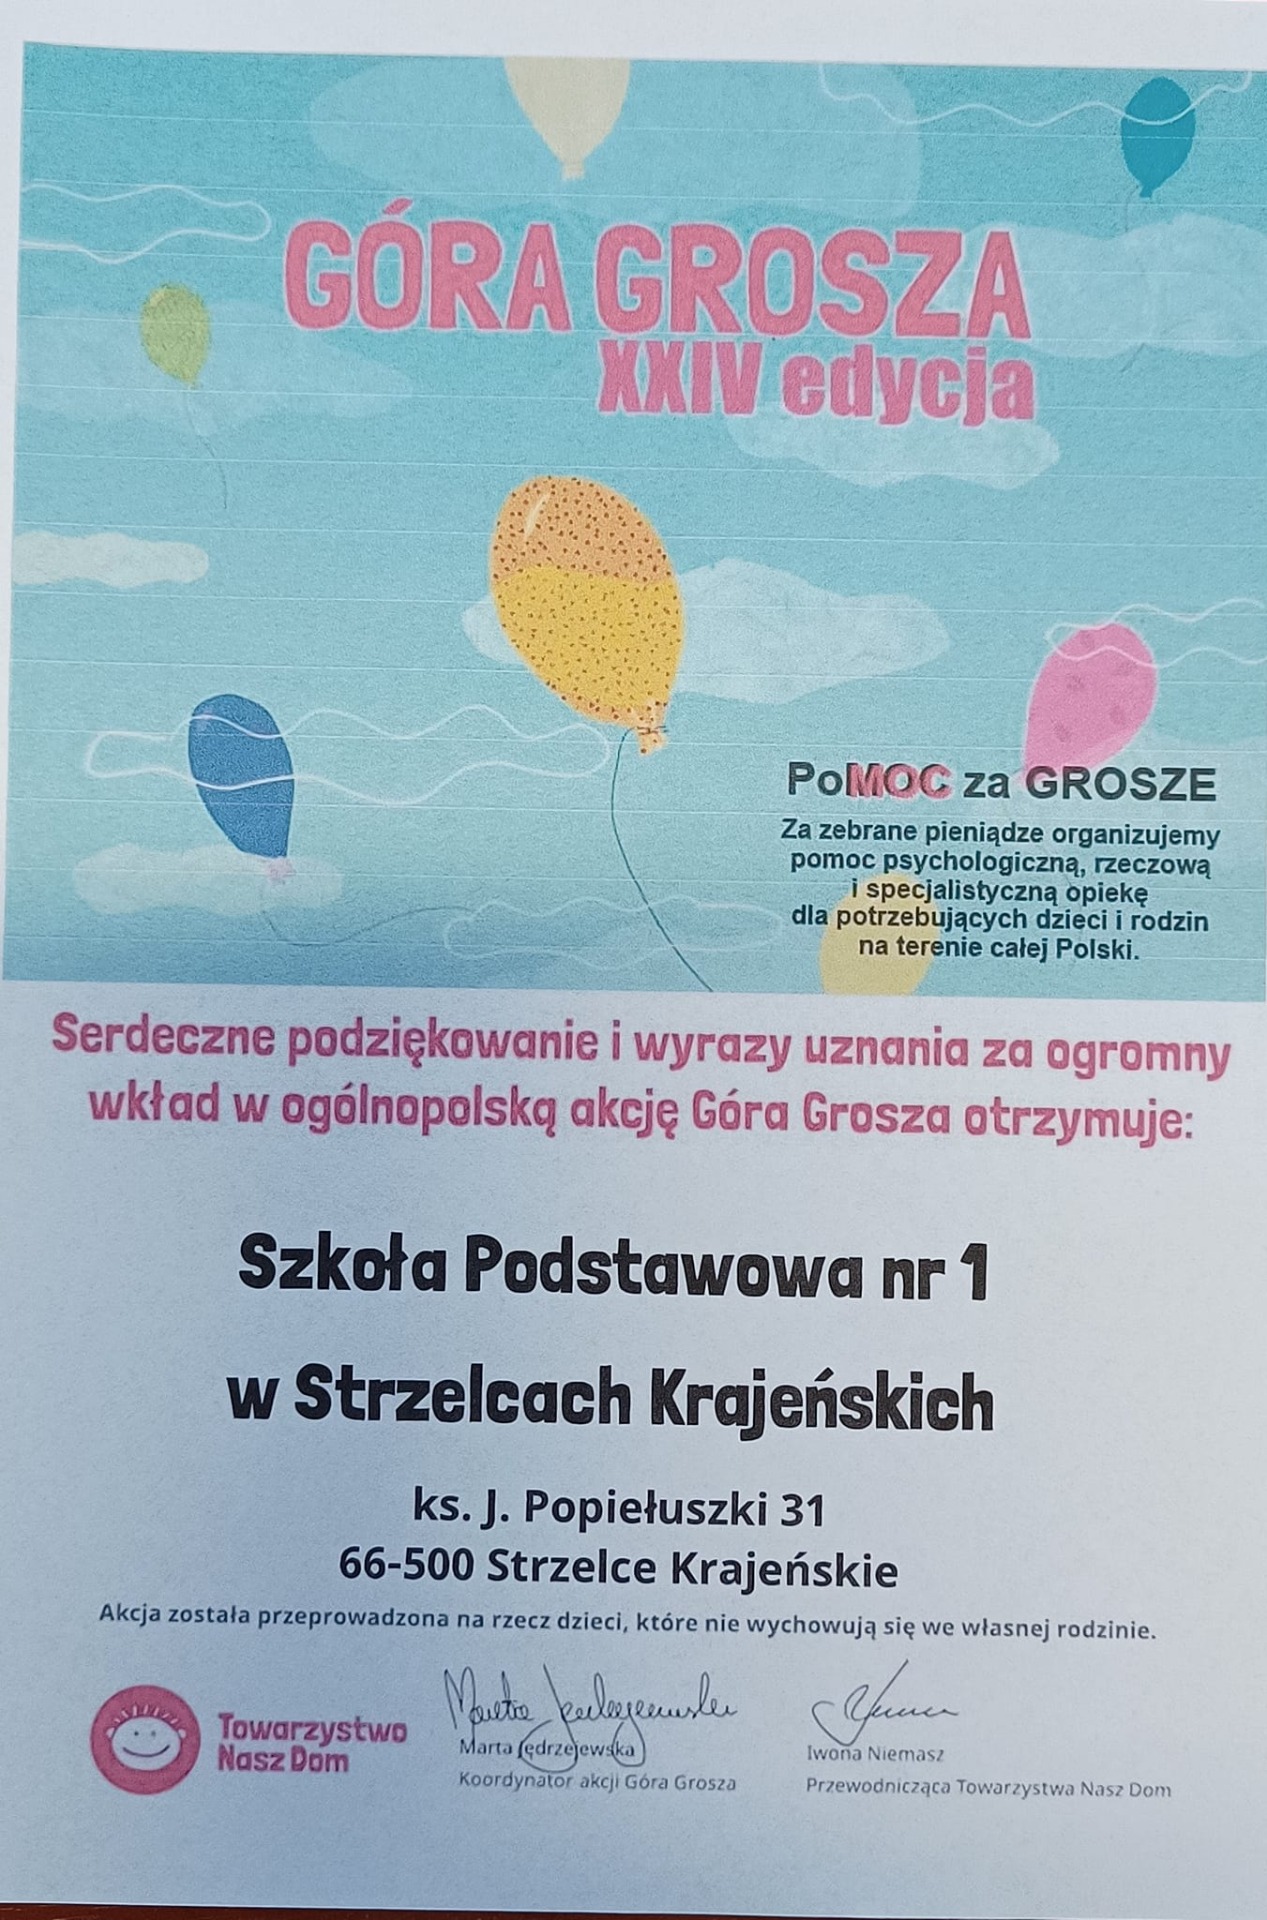 XXIV edycja Góra Grosza - podsumowanie - Obrazek 1